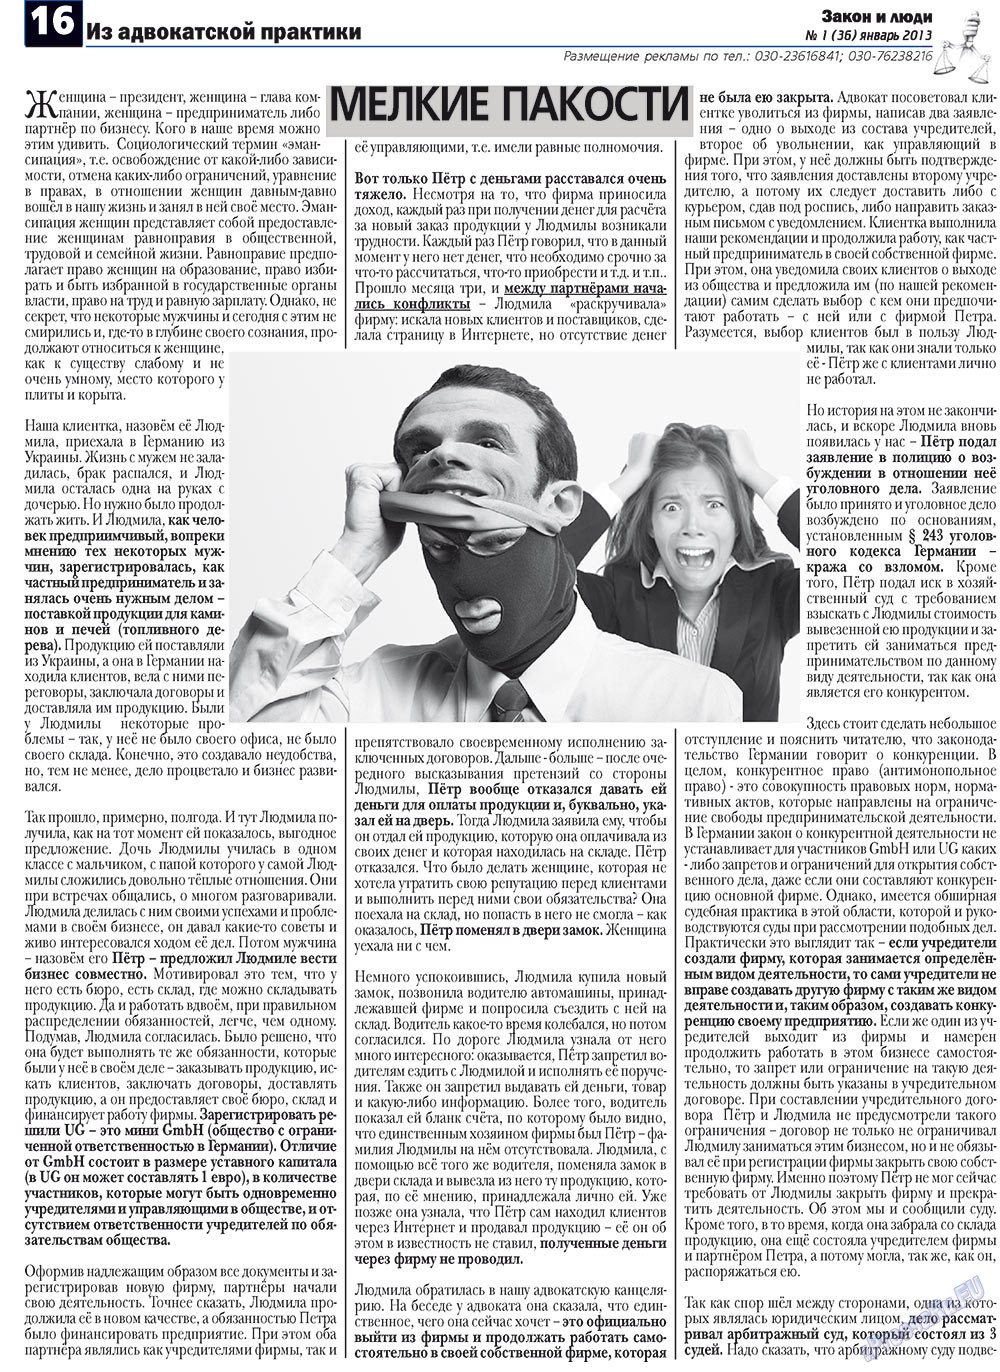 Закон и люди, газета. 2013 №1 стр.16